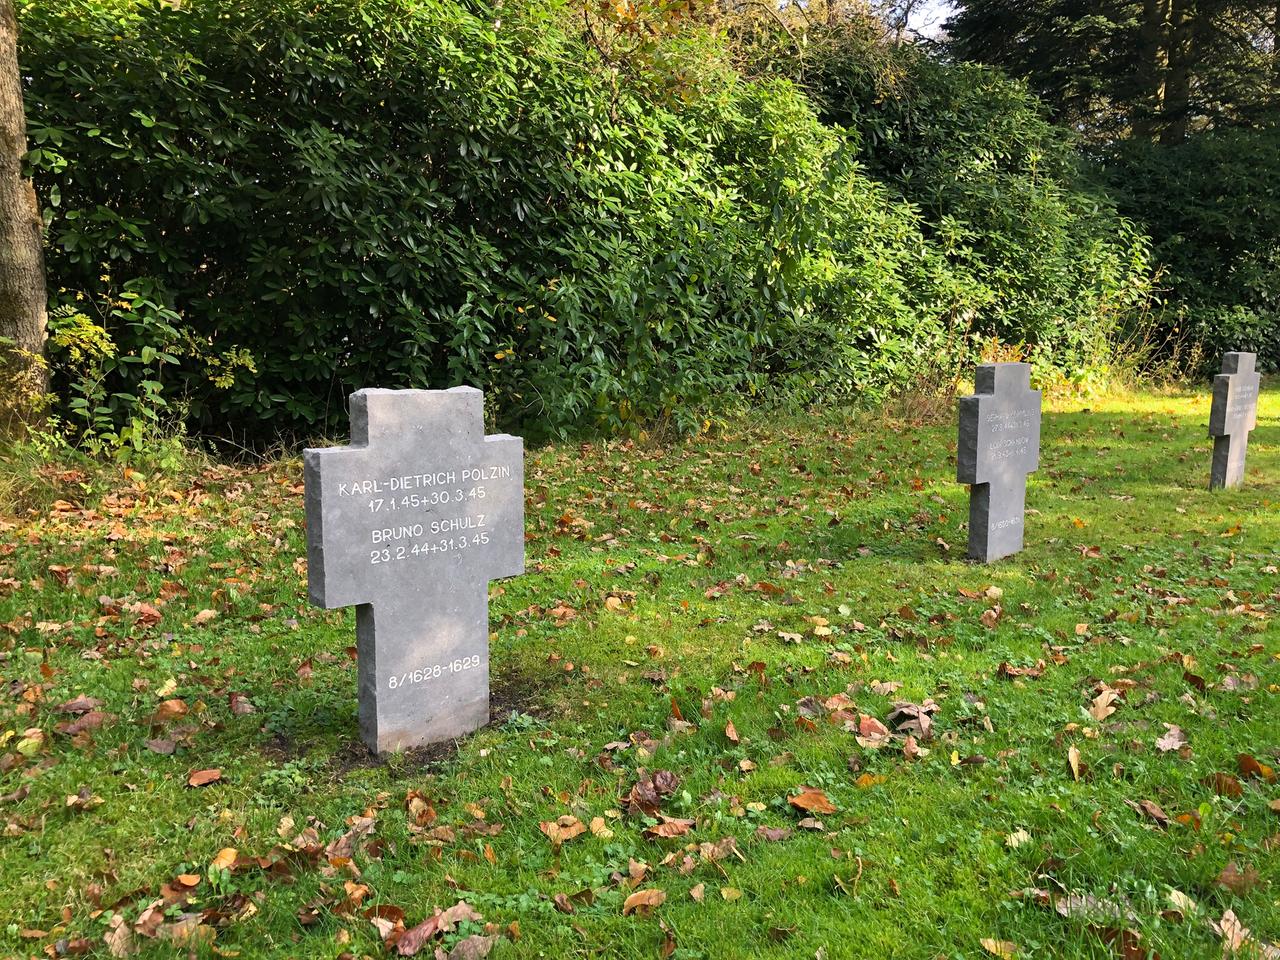 Ein steinernes Kreuz auf dem Friedhof trägt die Aufschrift: "Karl-Dietrich Polzin. 17.1.45-30.3.45 / Bruno Schulz. 23.2.44-31.3.45".